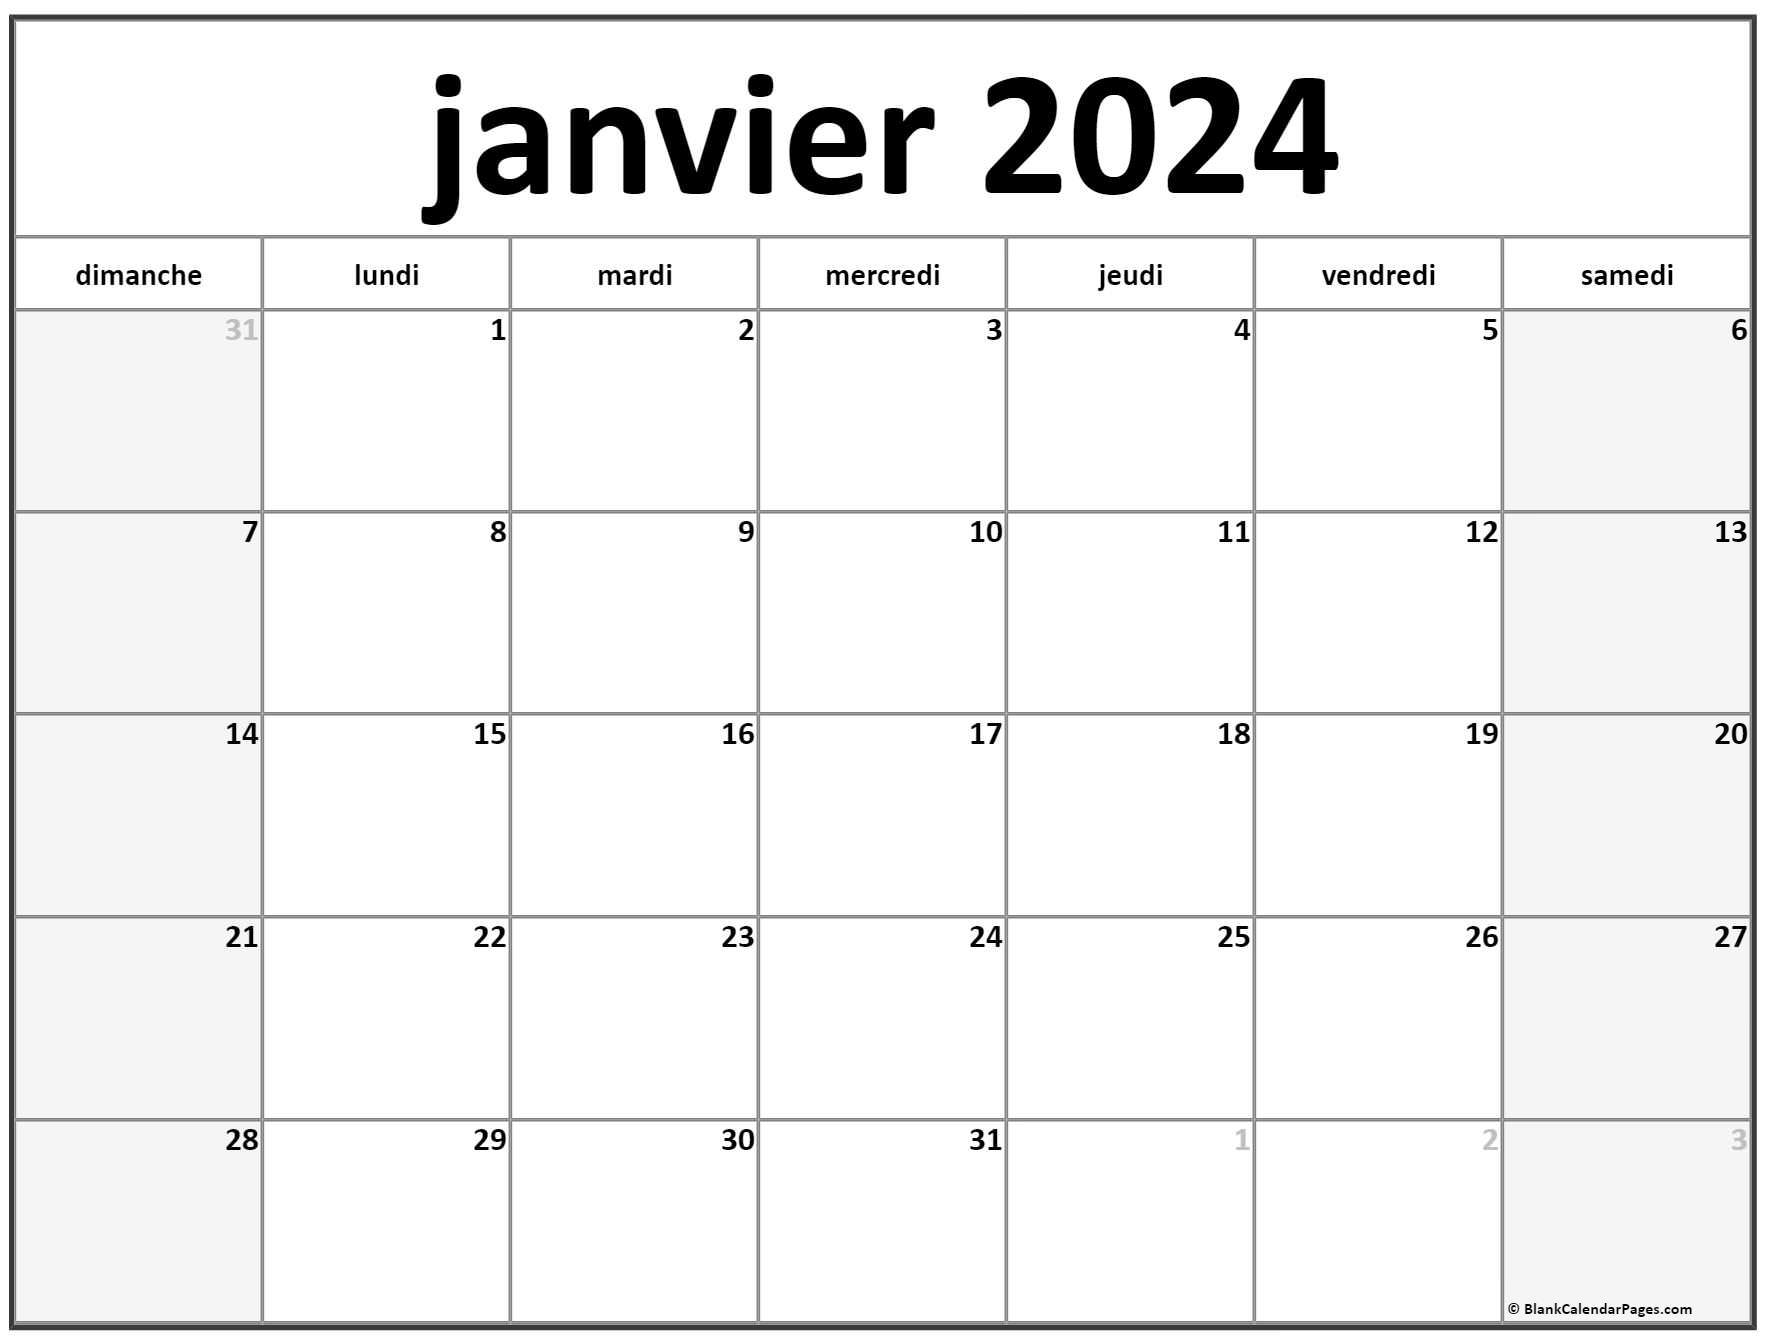 Calendrier Janvier 2024 à consulter, télécharger et imprimer